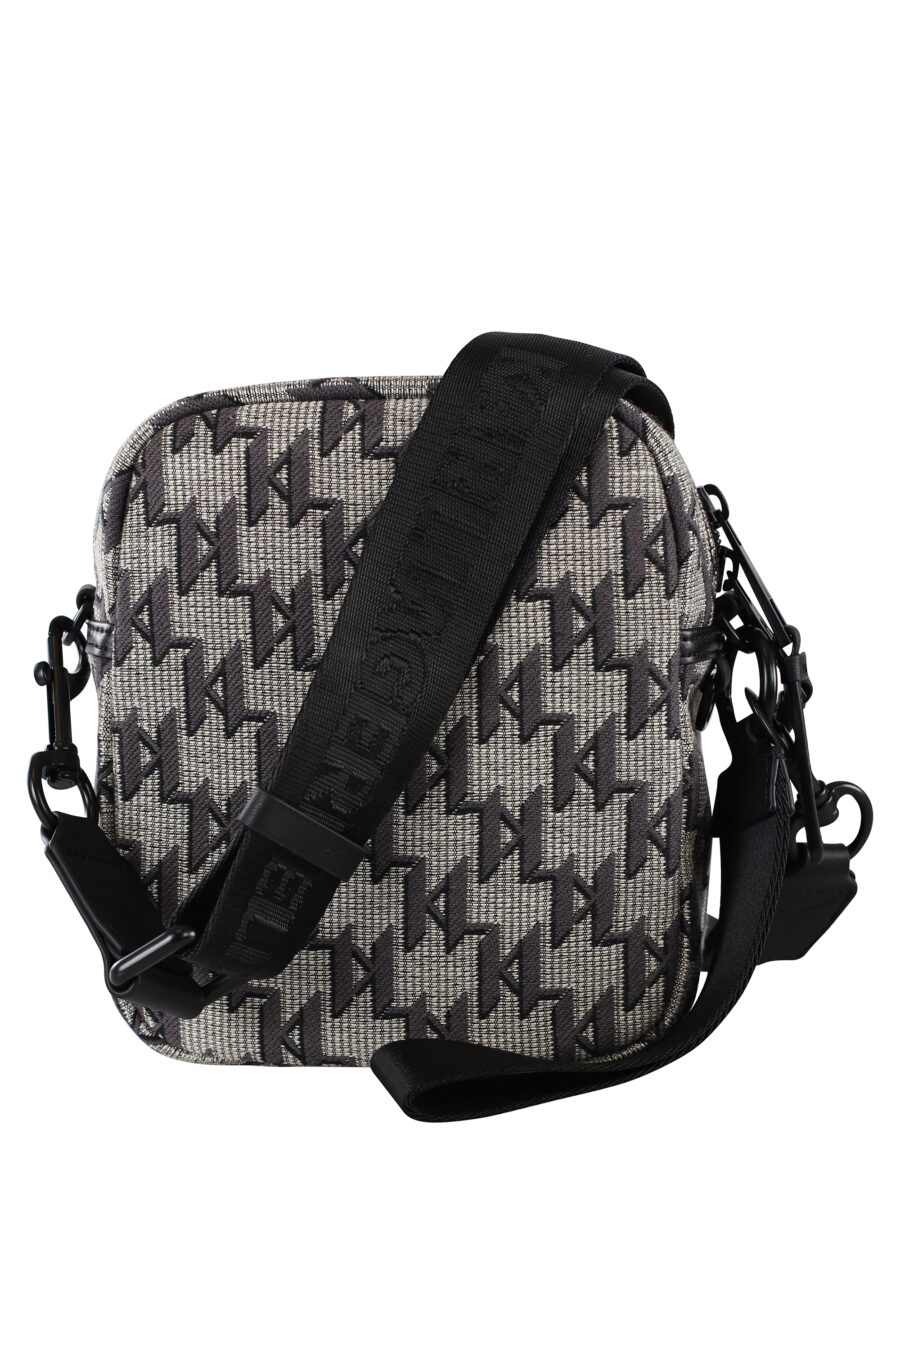 Shoulder bag with monogram logo - IMG 6930